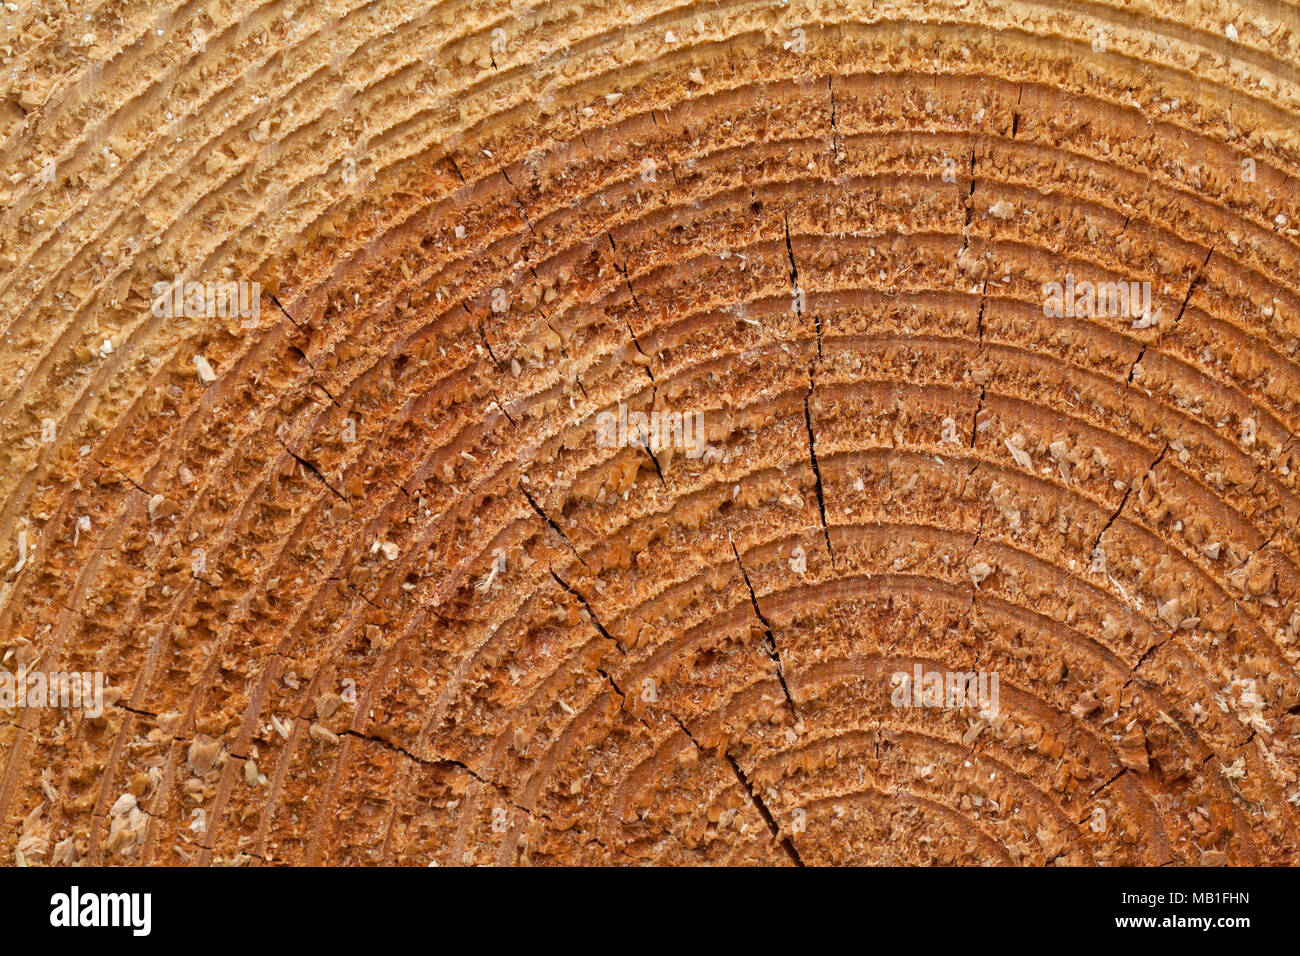 Sección transversal / vista seccional / cut-away sección de talados Noruega abeto rojo (Picea abies), mostrando un crecimiento anual anillos anillos / año Foto de stock